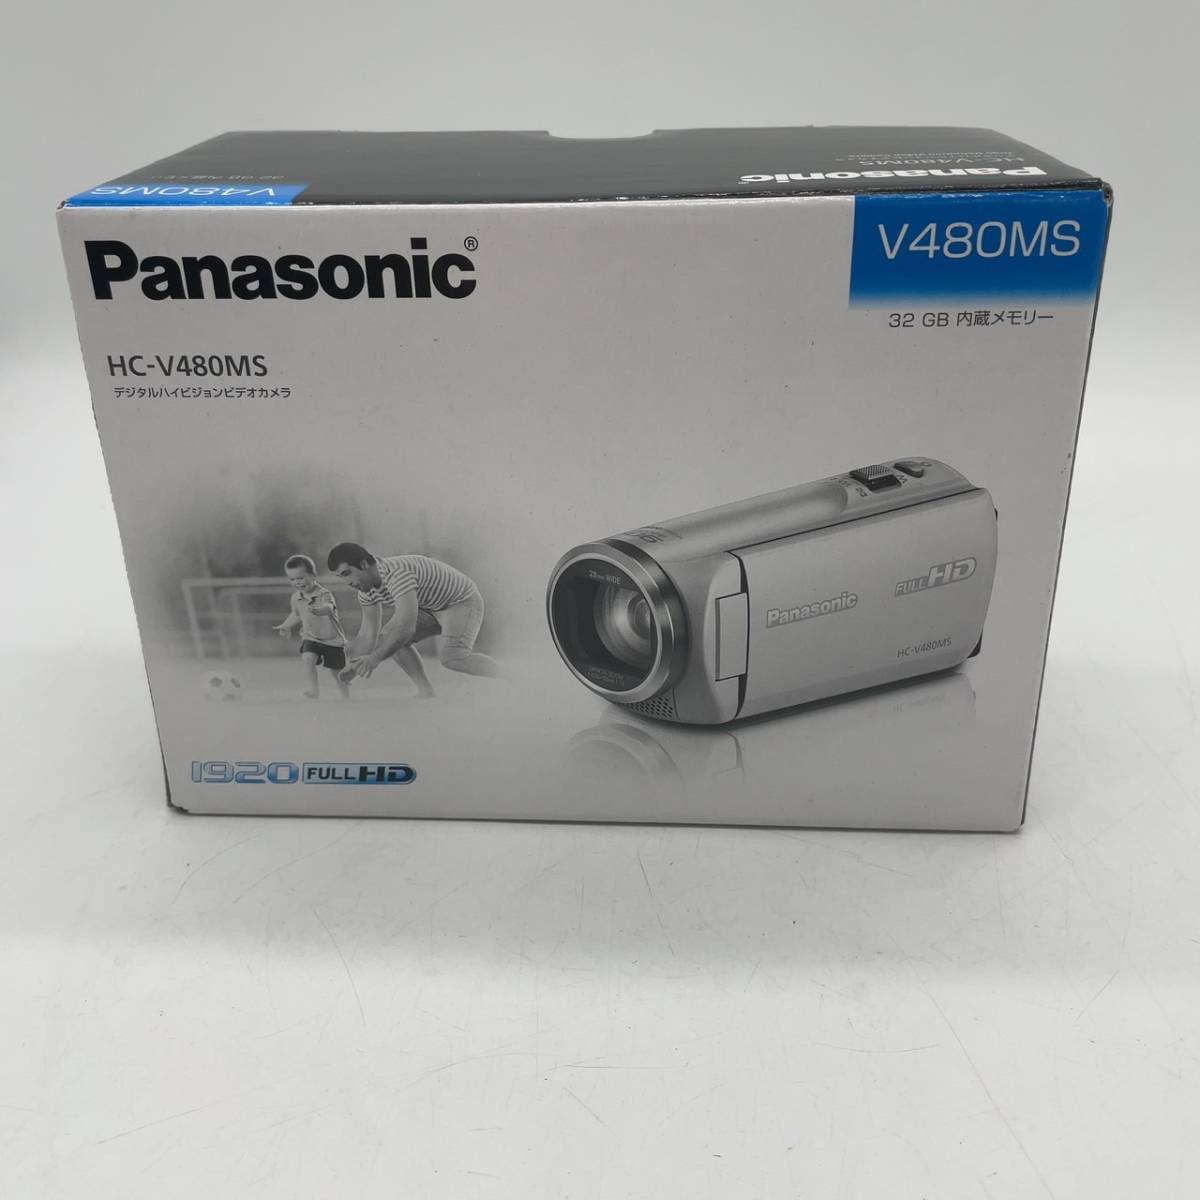 8151/未使用品 Panasonic HC-V480MS 32GB 内蔵メモリー パニソニック ビデオカメラ